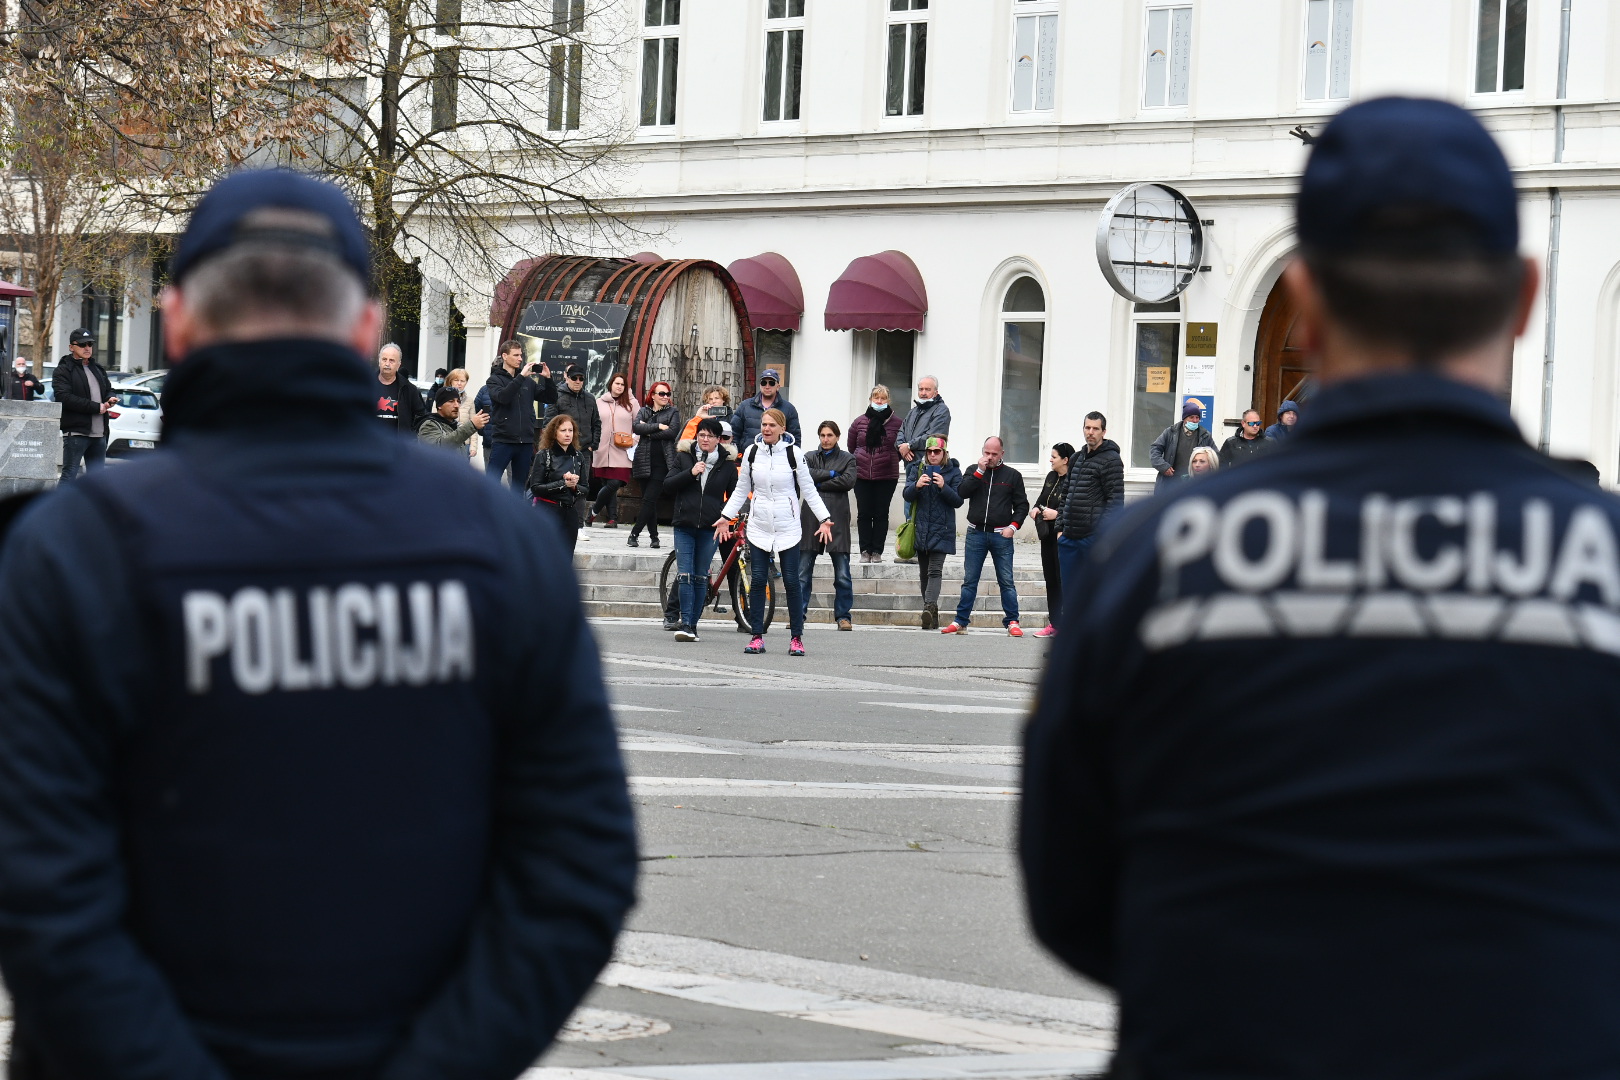 Mariborski policisti pred protesti: Nosečnice, starejši in otroci raje ostanite doma